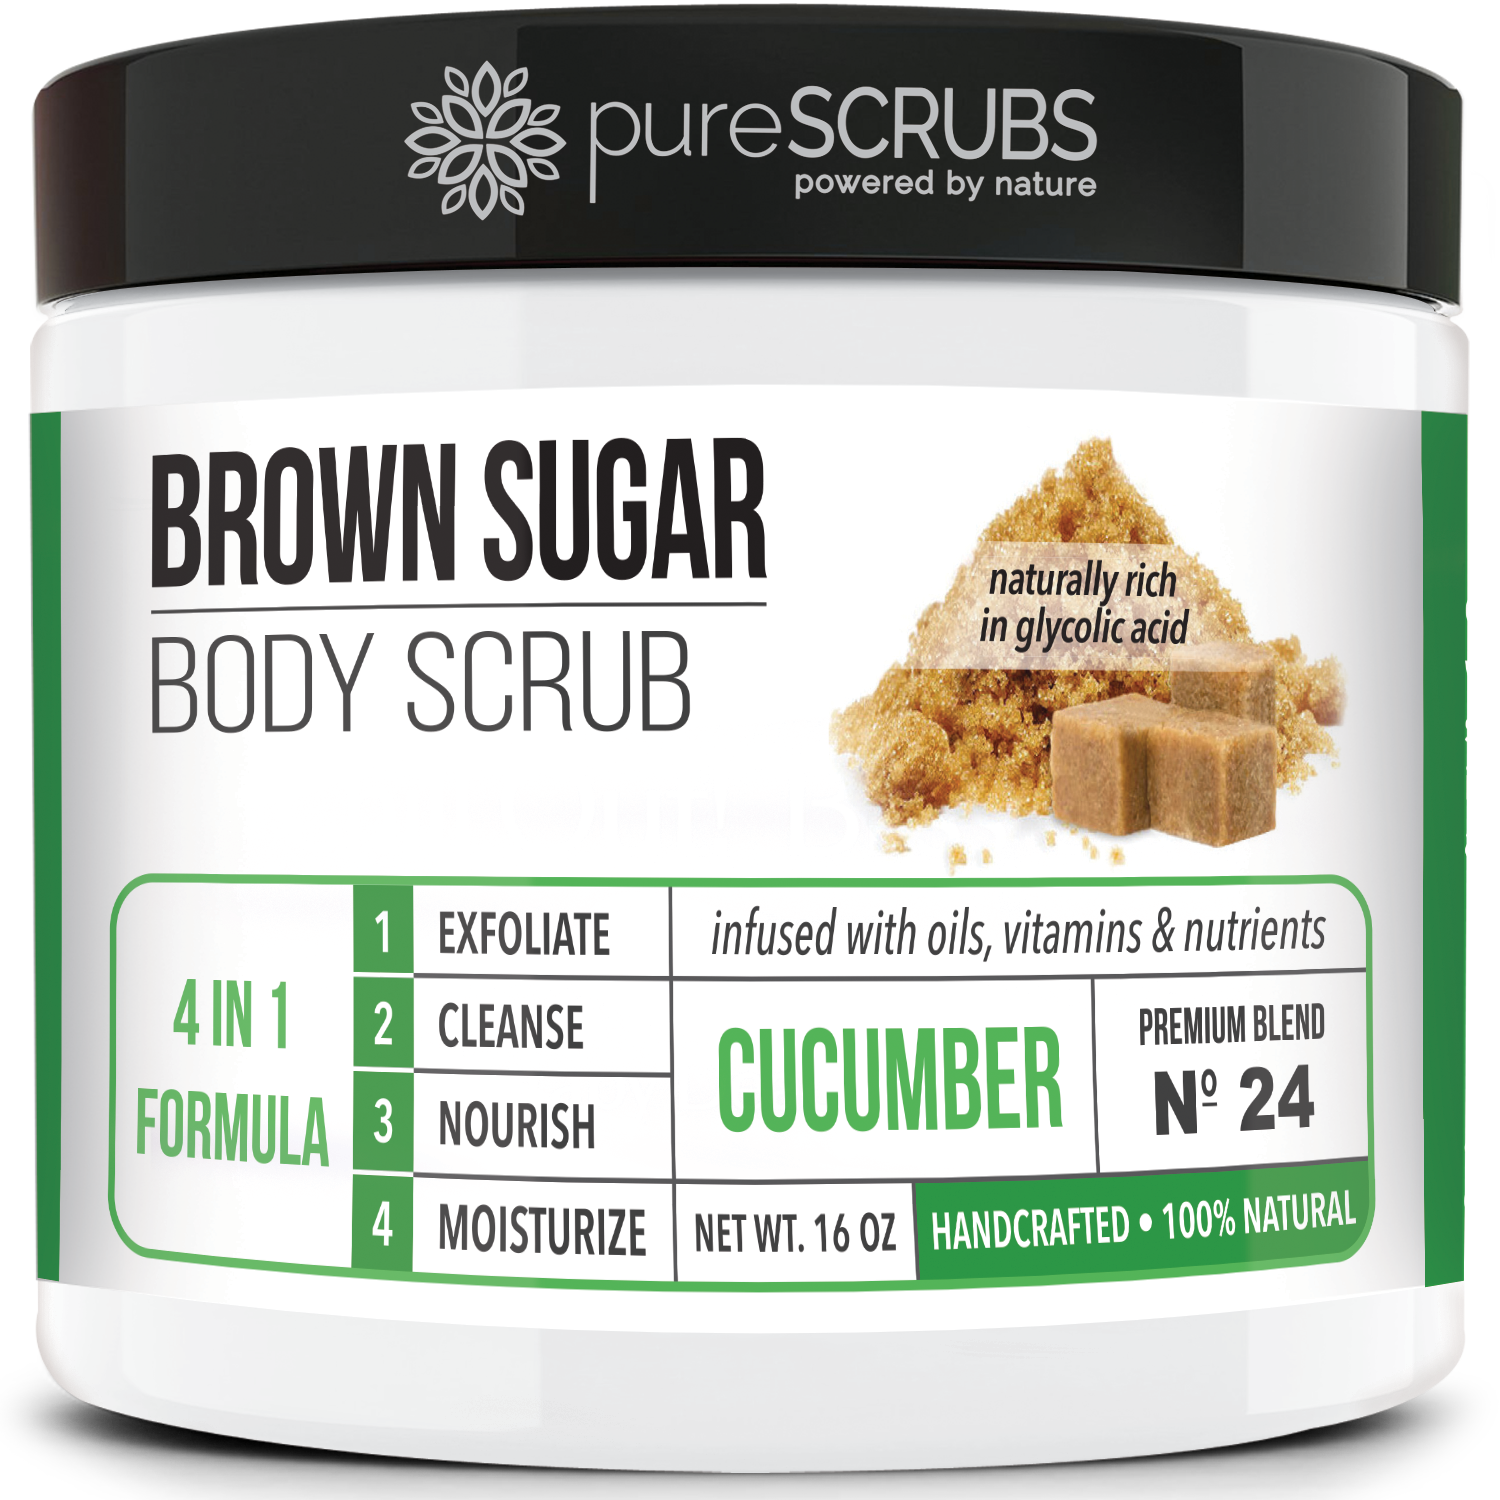 Cucumber Body Scrub / Brown Sugar / Premium Blend #24